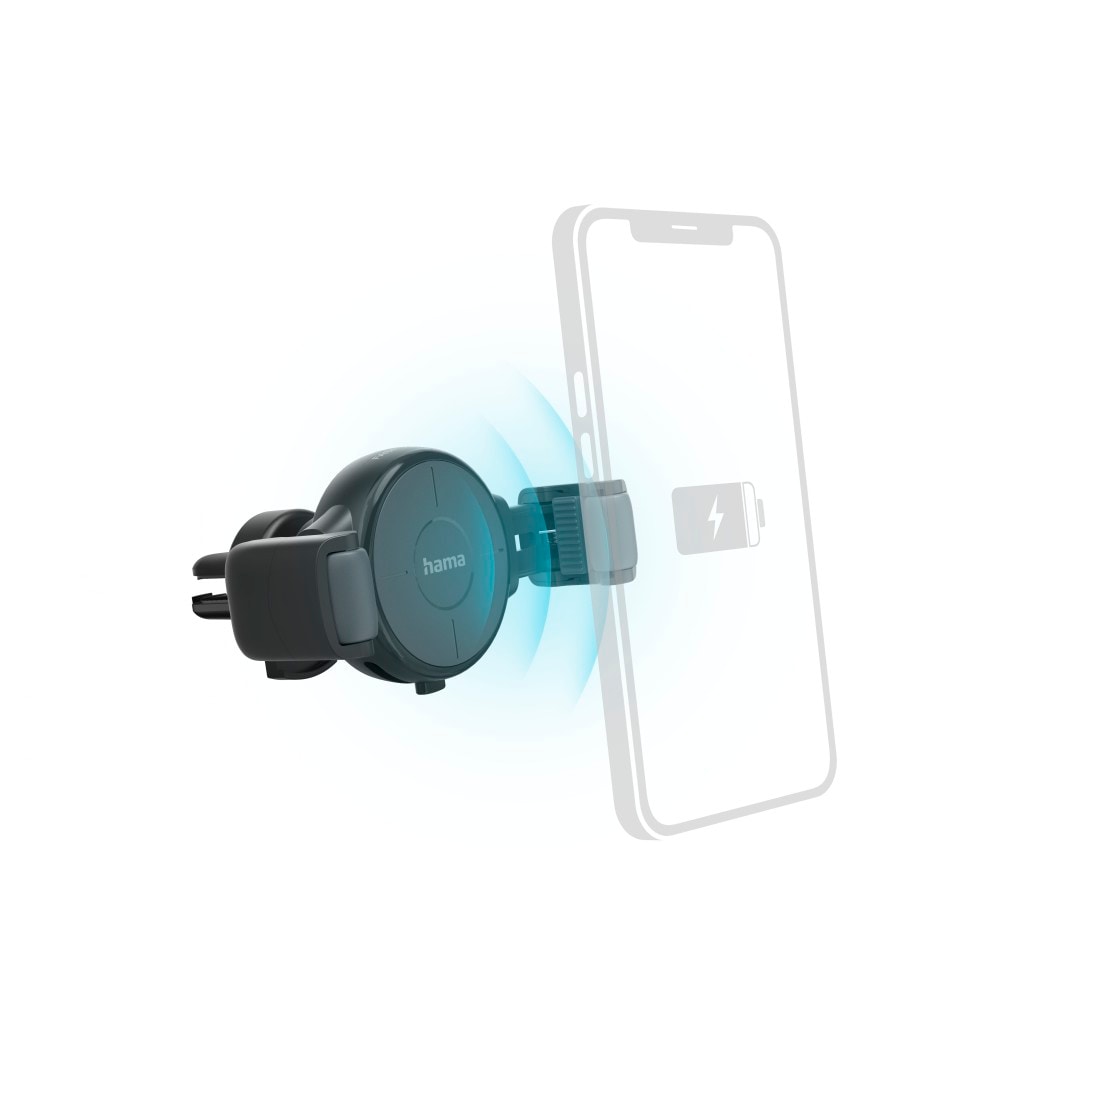 Hama Wireless Charger »Kfz Handy Ladegerät Set mit Halterung, KFZ Adapter und Ladekabel, Grau«, Qi-Technologie, Wireless Charging